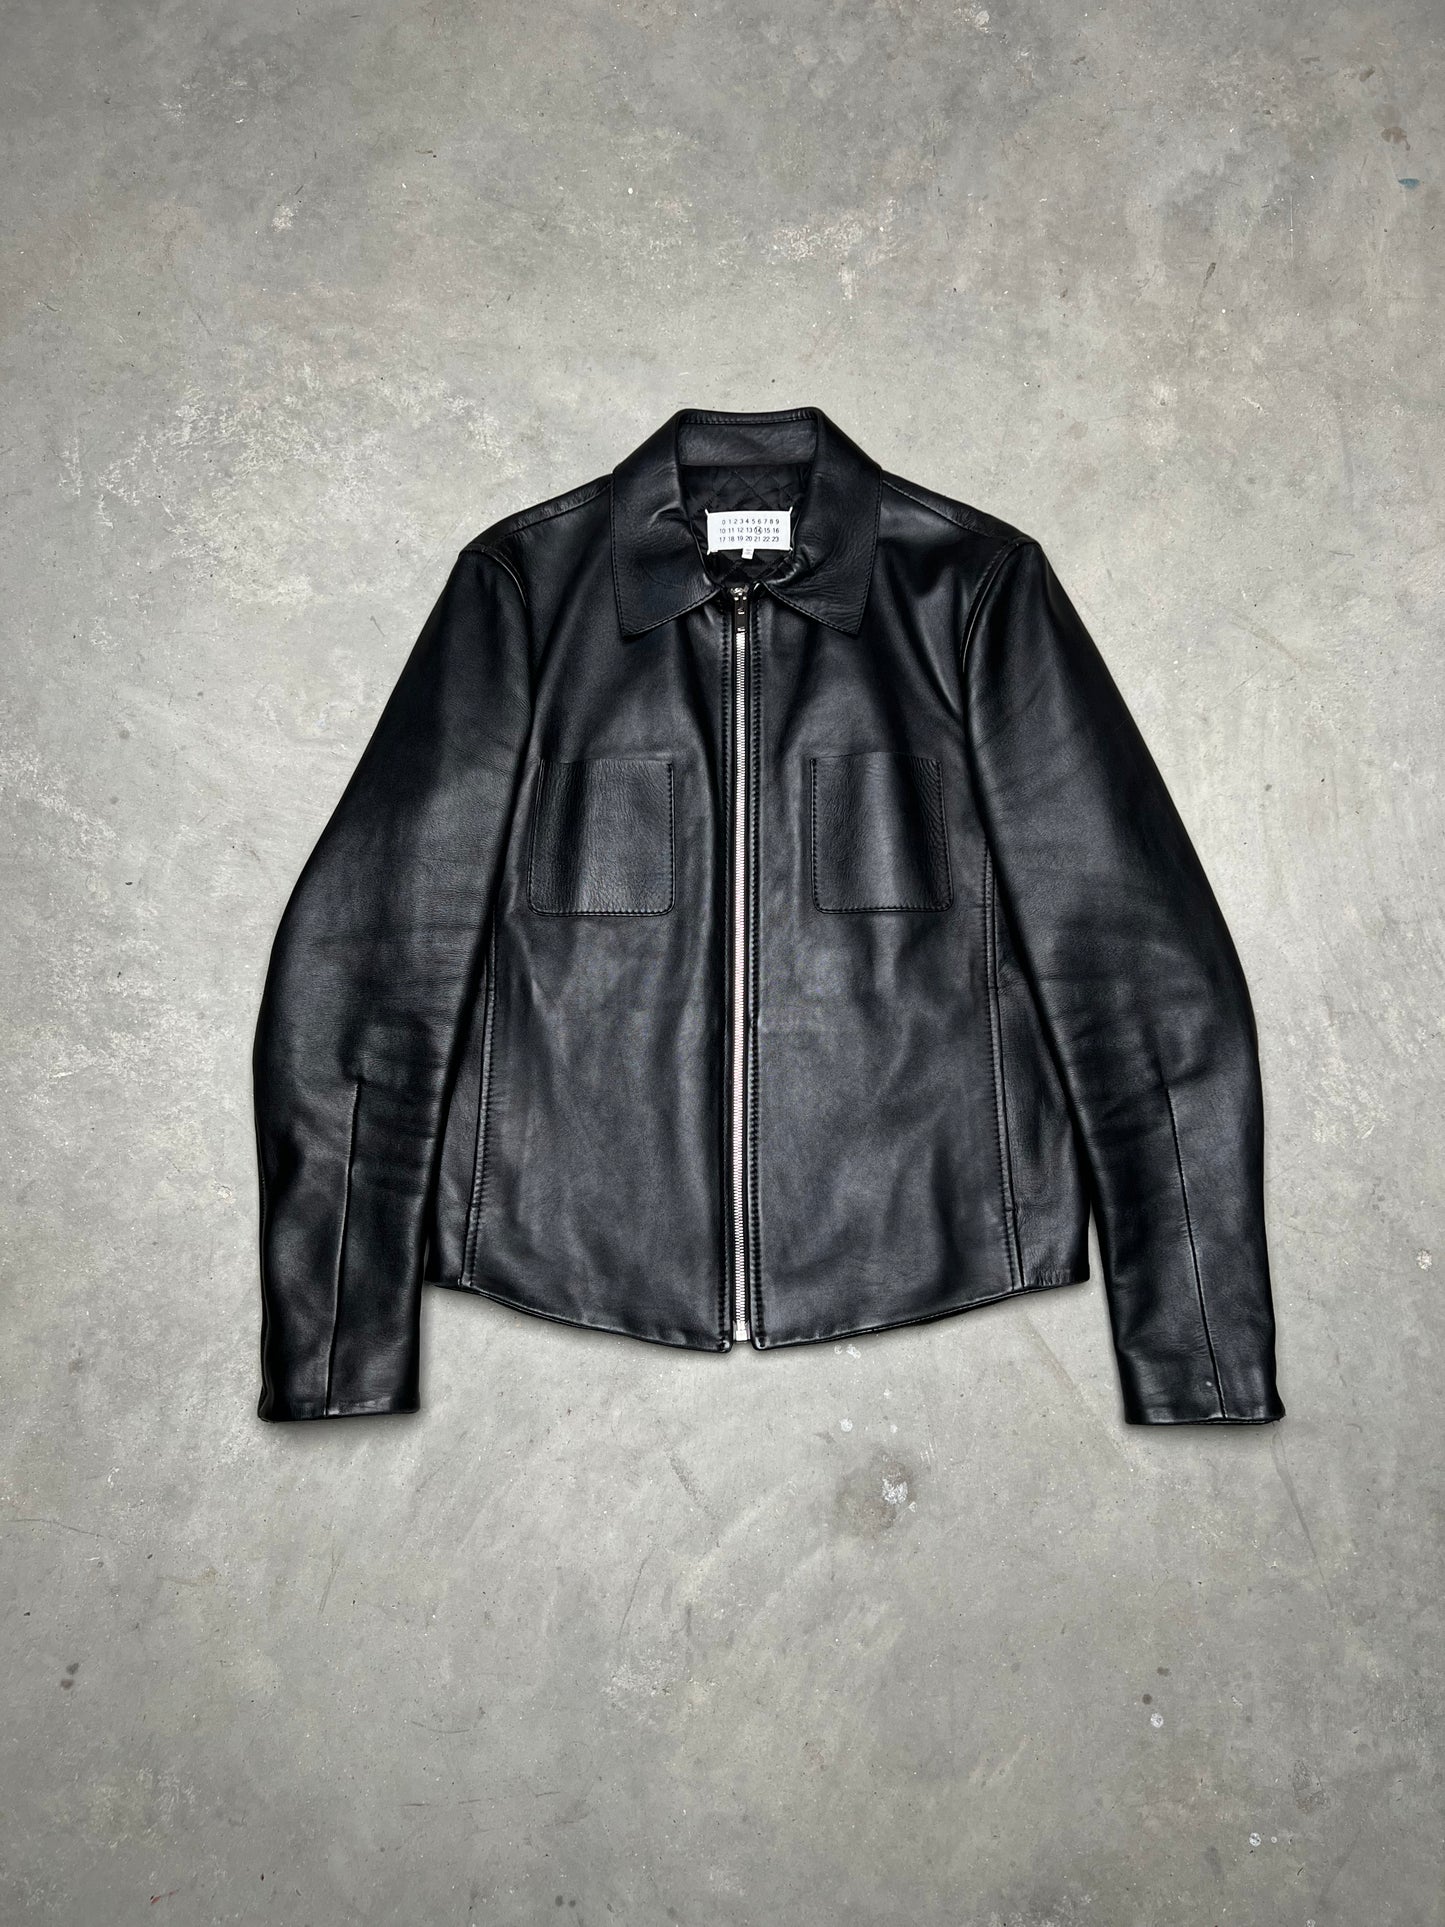 Maison Martin Margiela Leather Jacket